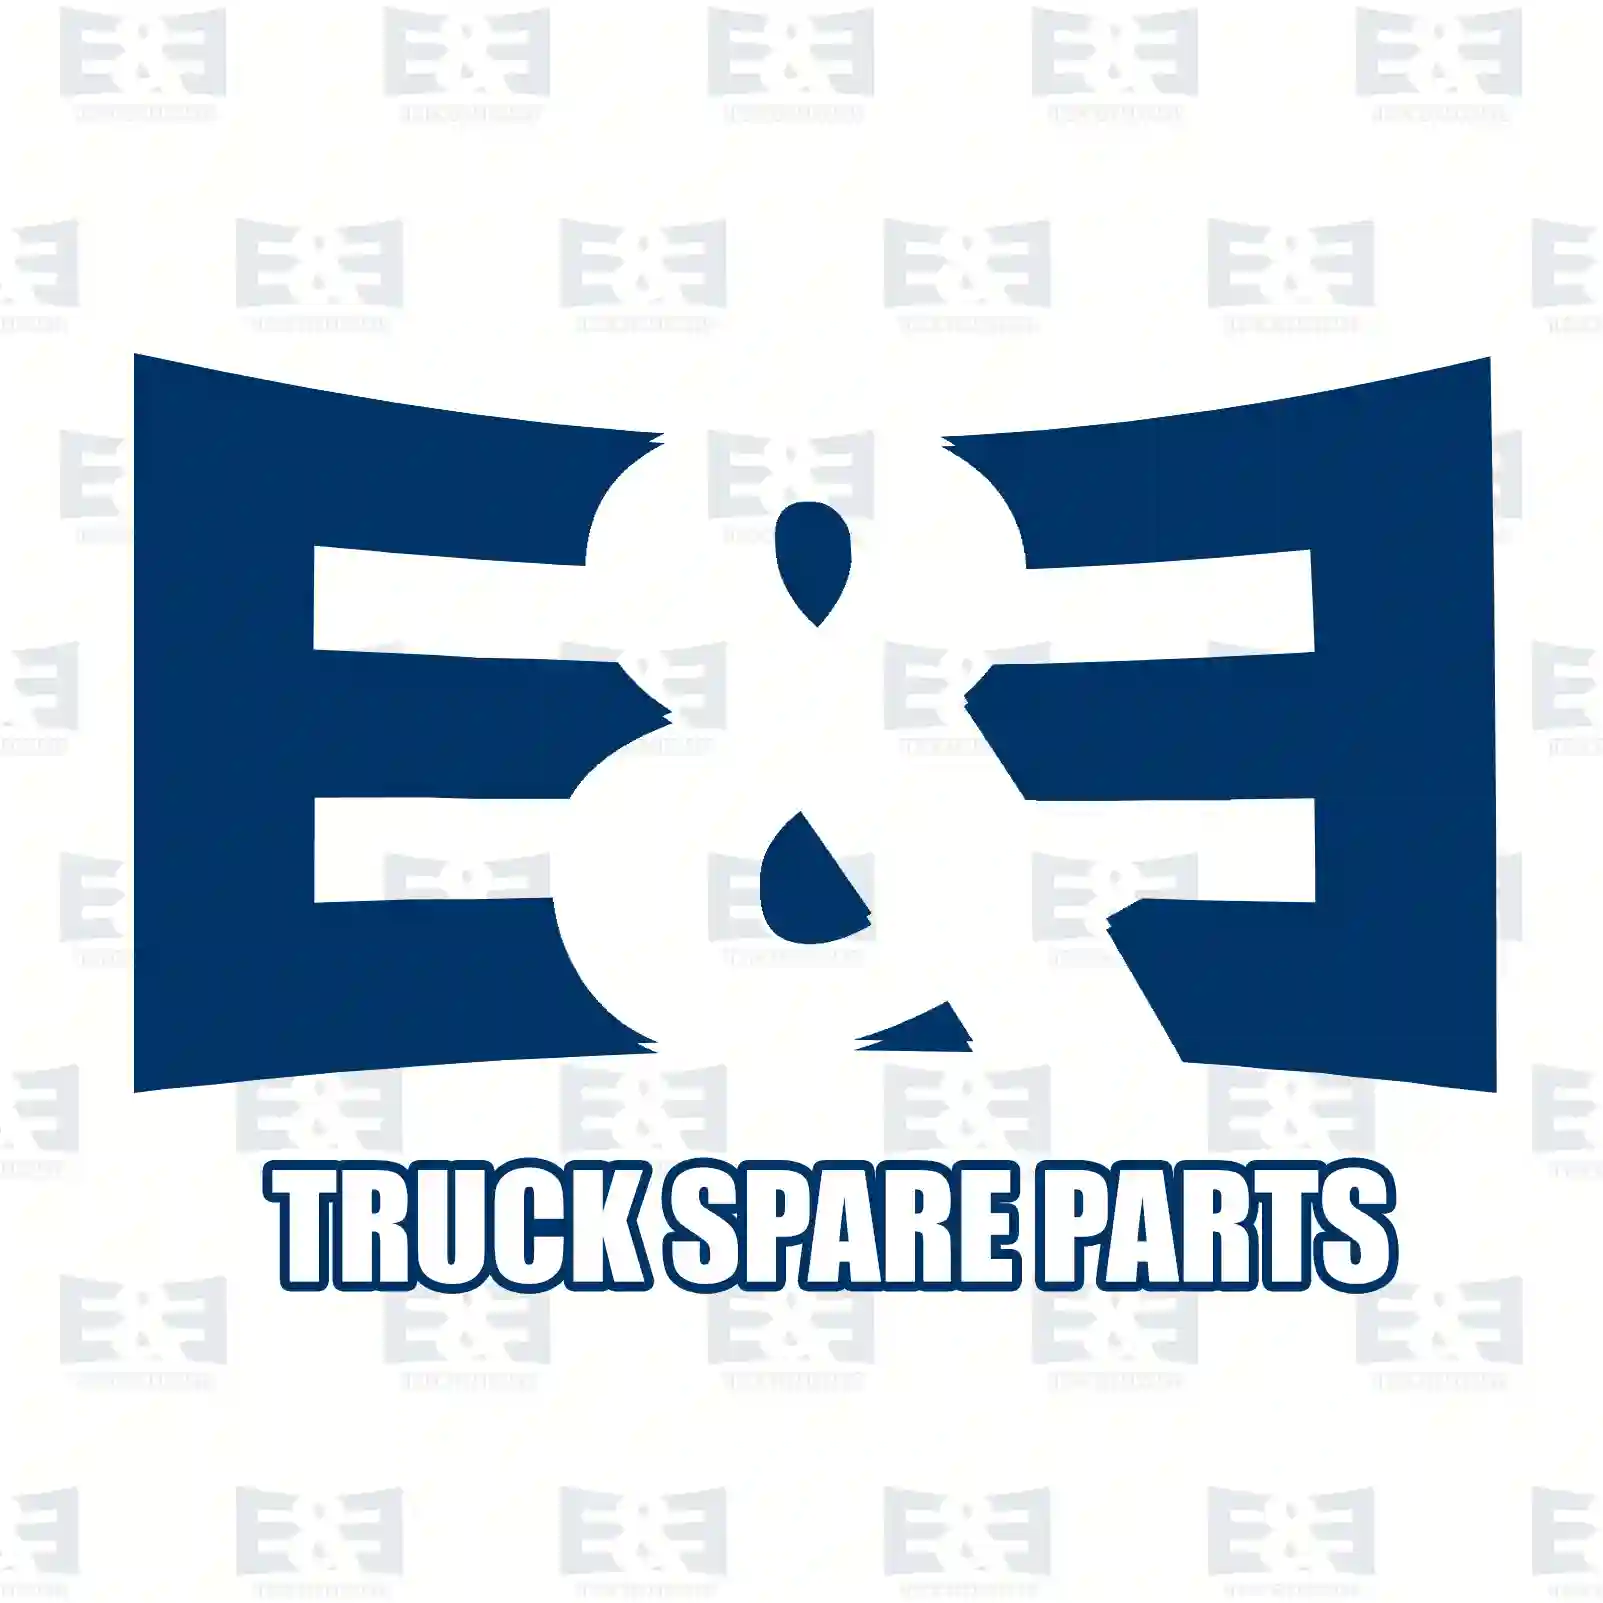 Cabin tilt cylinder, 2E2275527, 500310395, , , , , , , ||  2E2275527 E&E Truck Spare Parts | Truck Spare Parts, Auotomotive Spare Parts Cabin tilt cylinder, 2E2275527, 500310395, , , , , , , ||  2E2275527 E&E Truck Spare Parts | Truck Spare Parts, Auotomotive Spare Parts